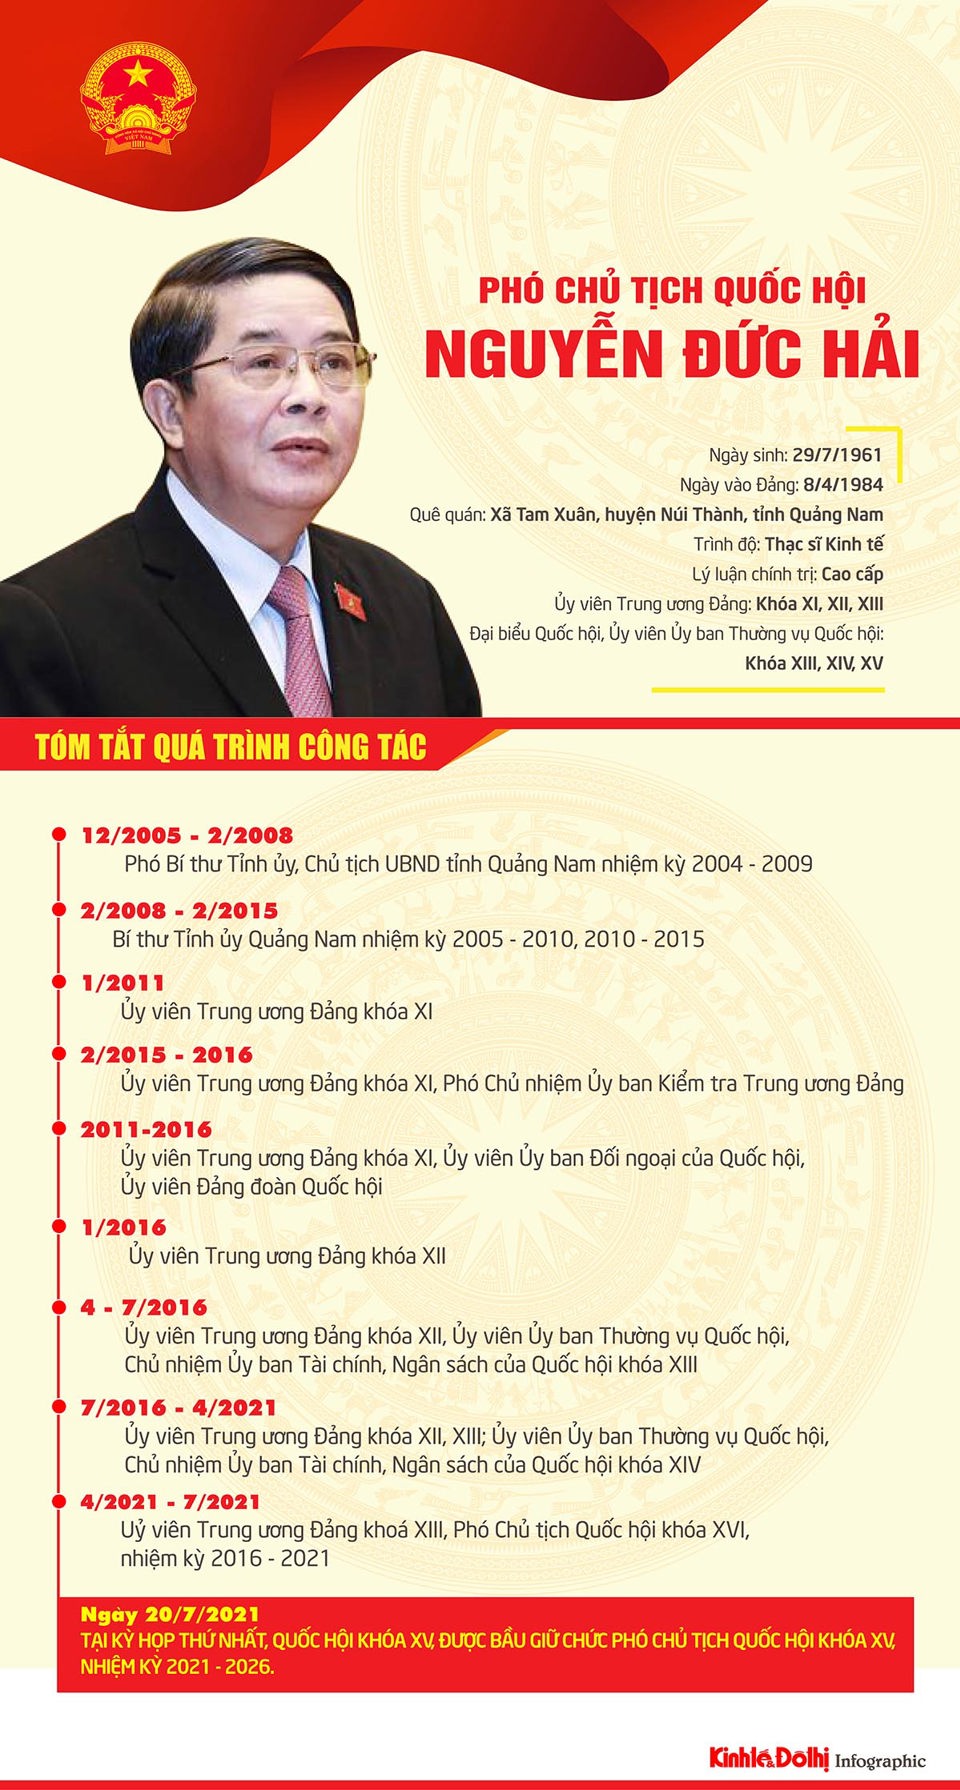 [Infographic] Chân dung Phó Chủ tịch Quốc hội khóa XV Nguyễn Đức Hải - Ảnh 1